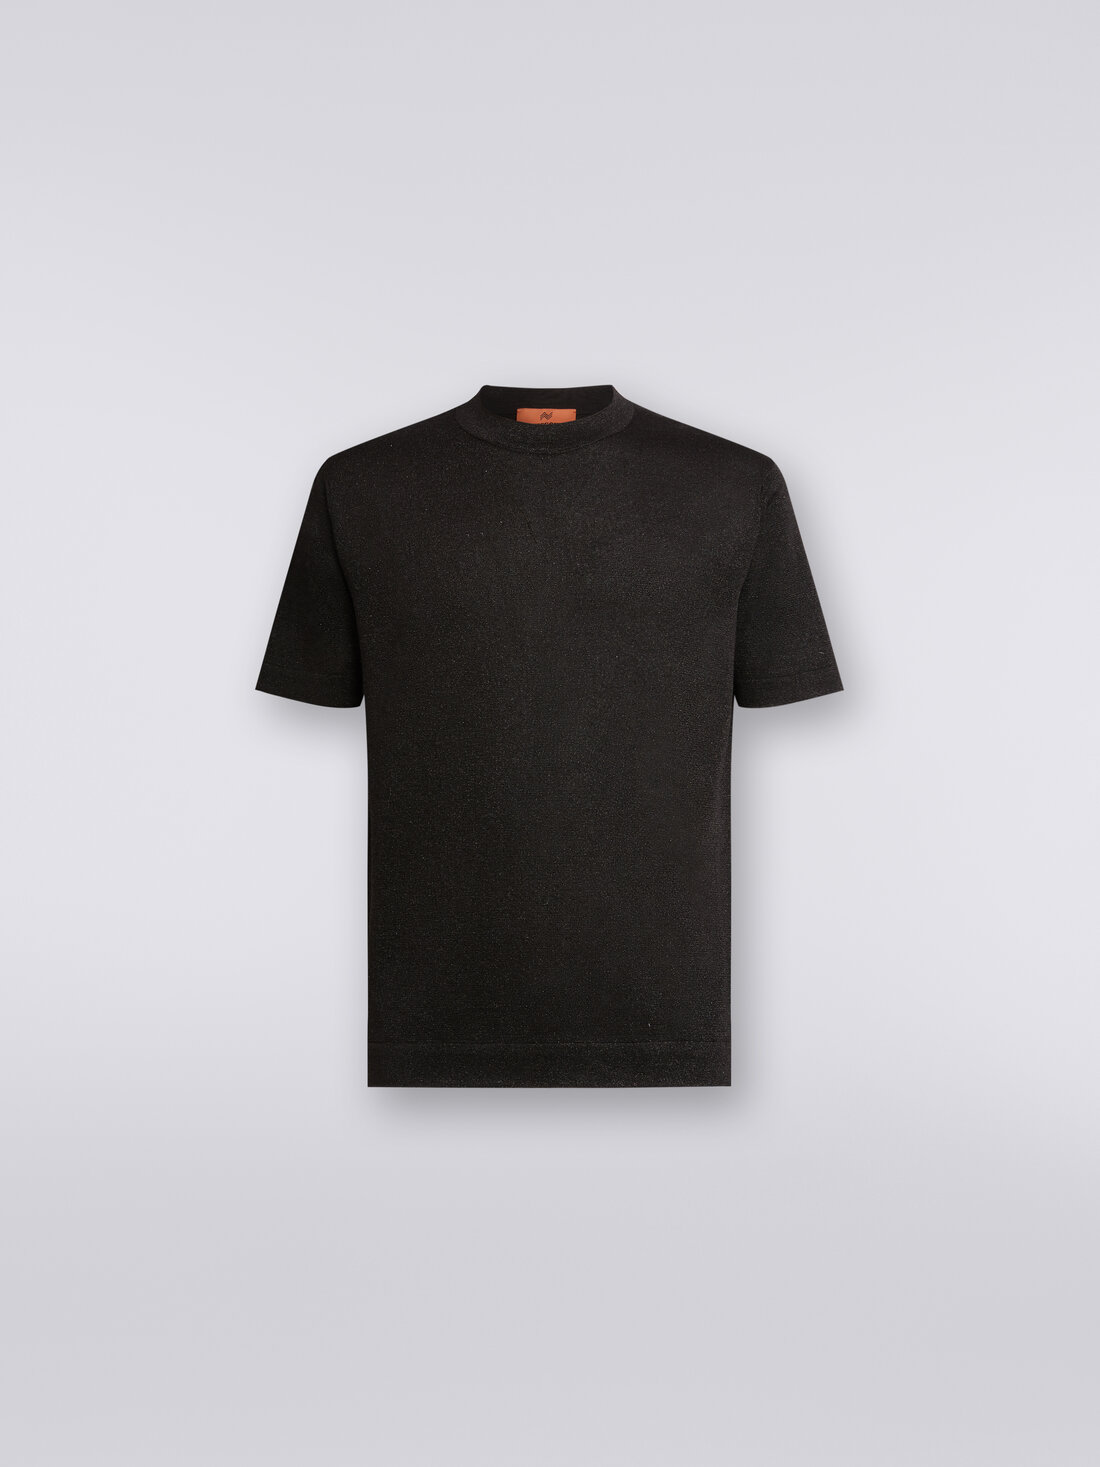 T-shirt in misto viscosa con lurex, Nero    - US24SL0EBK034PS91J5 - 0